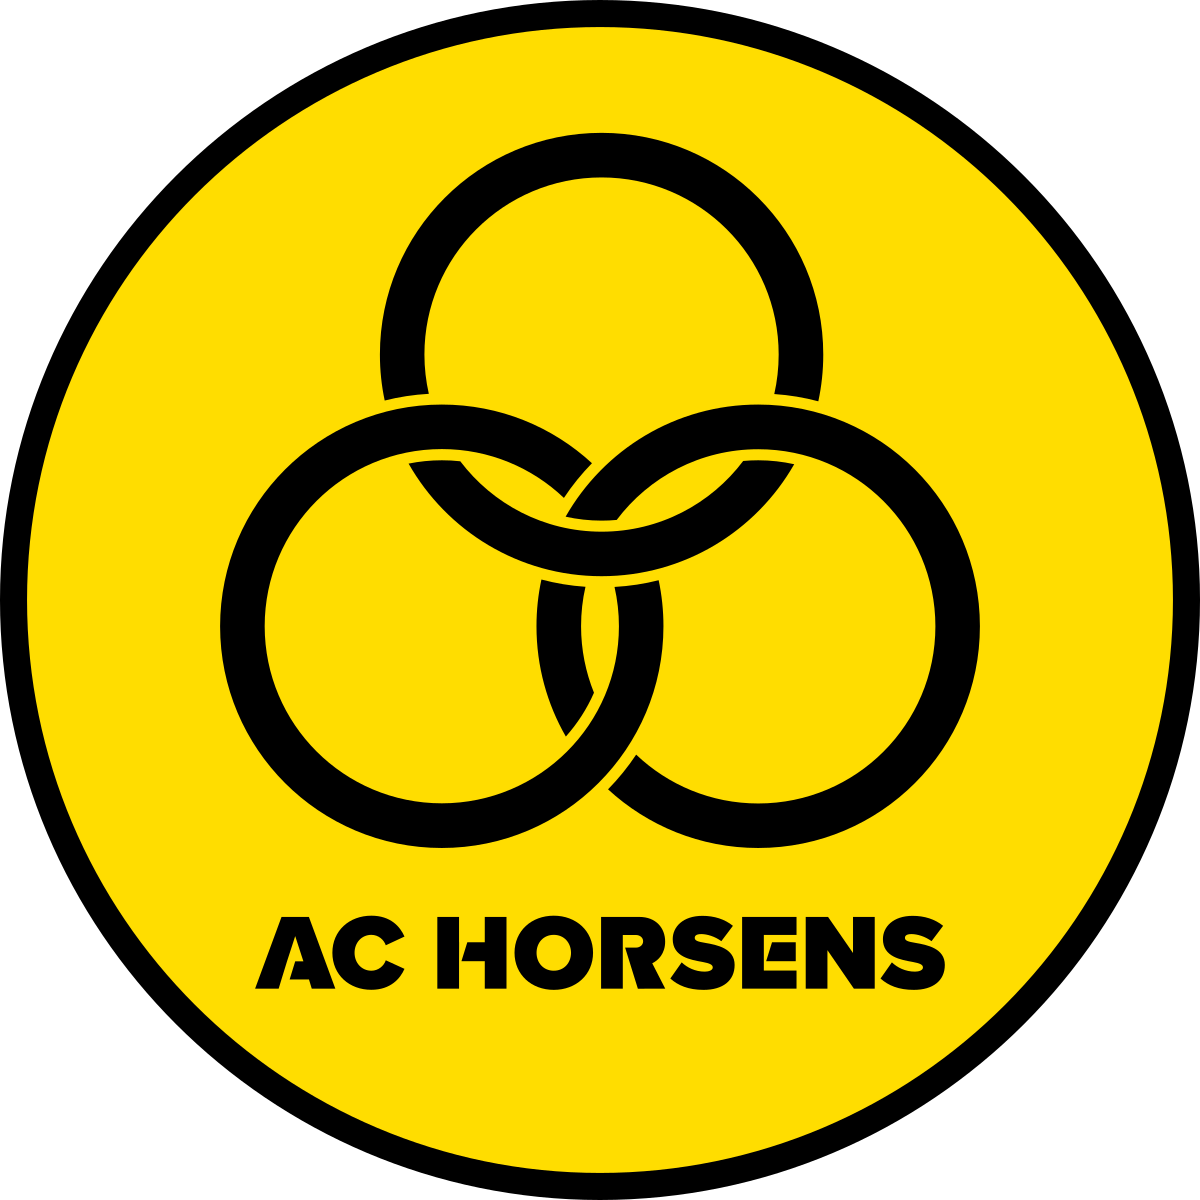 AC Horsens team logo